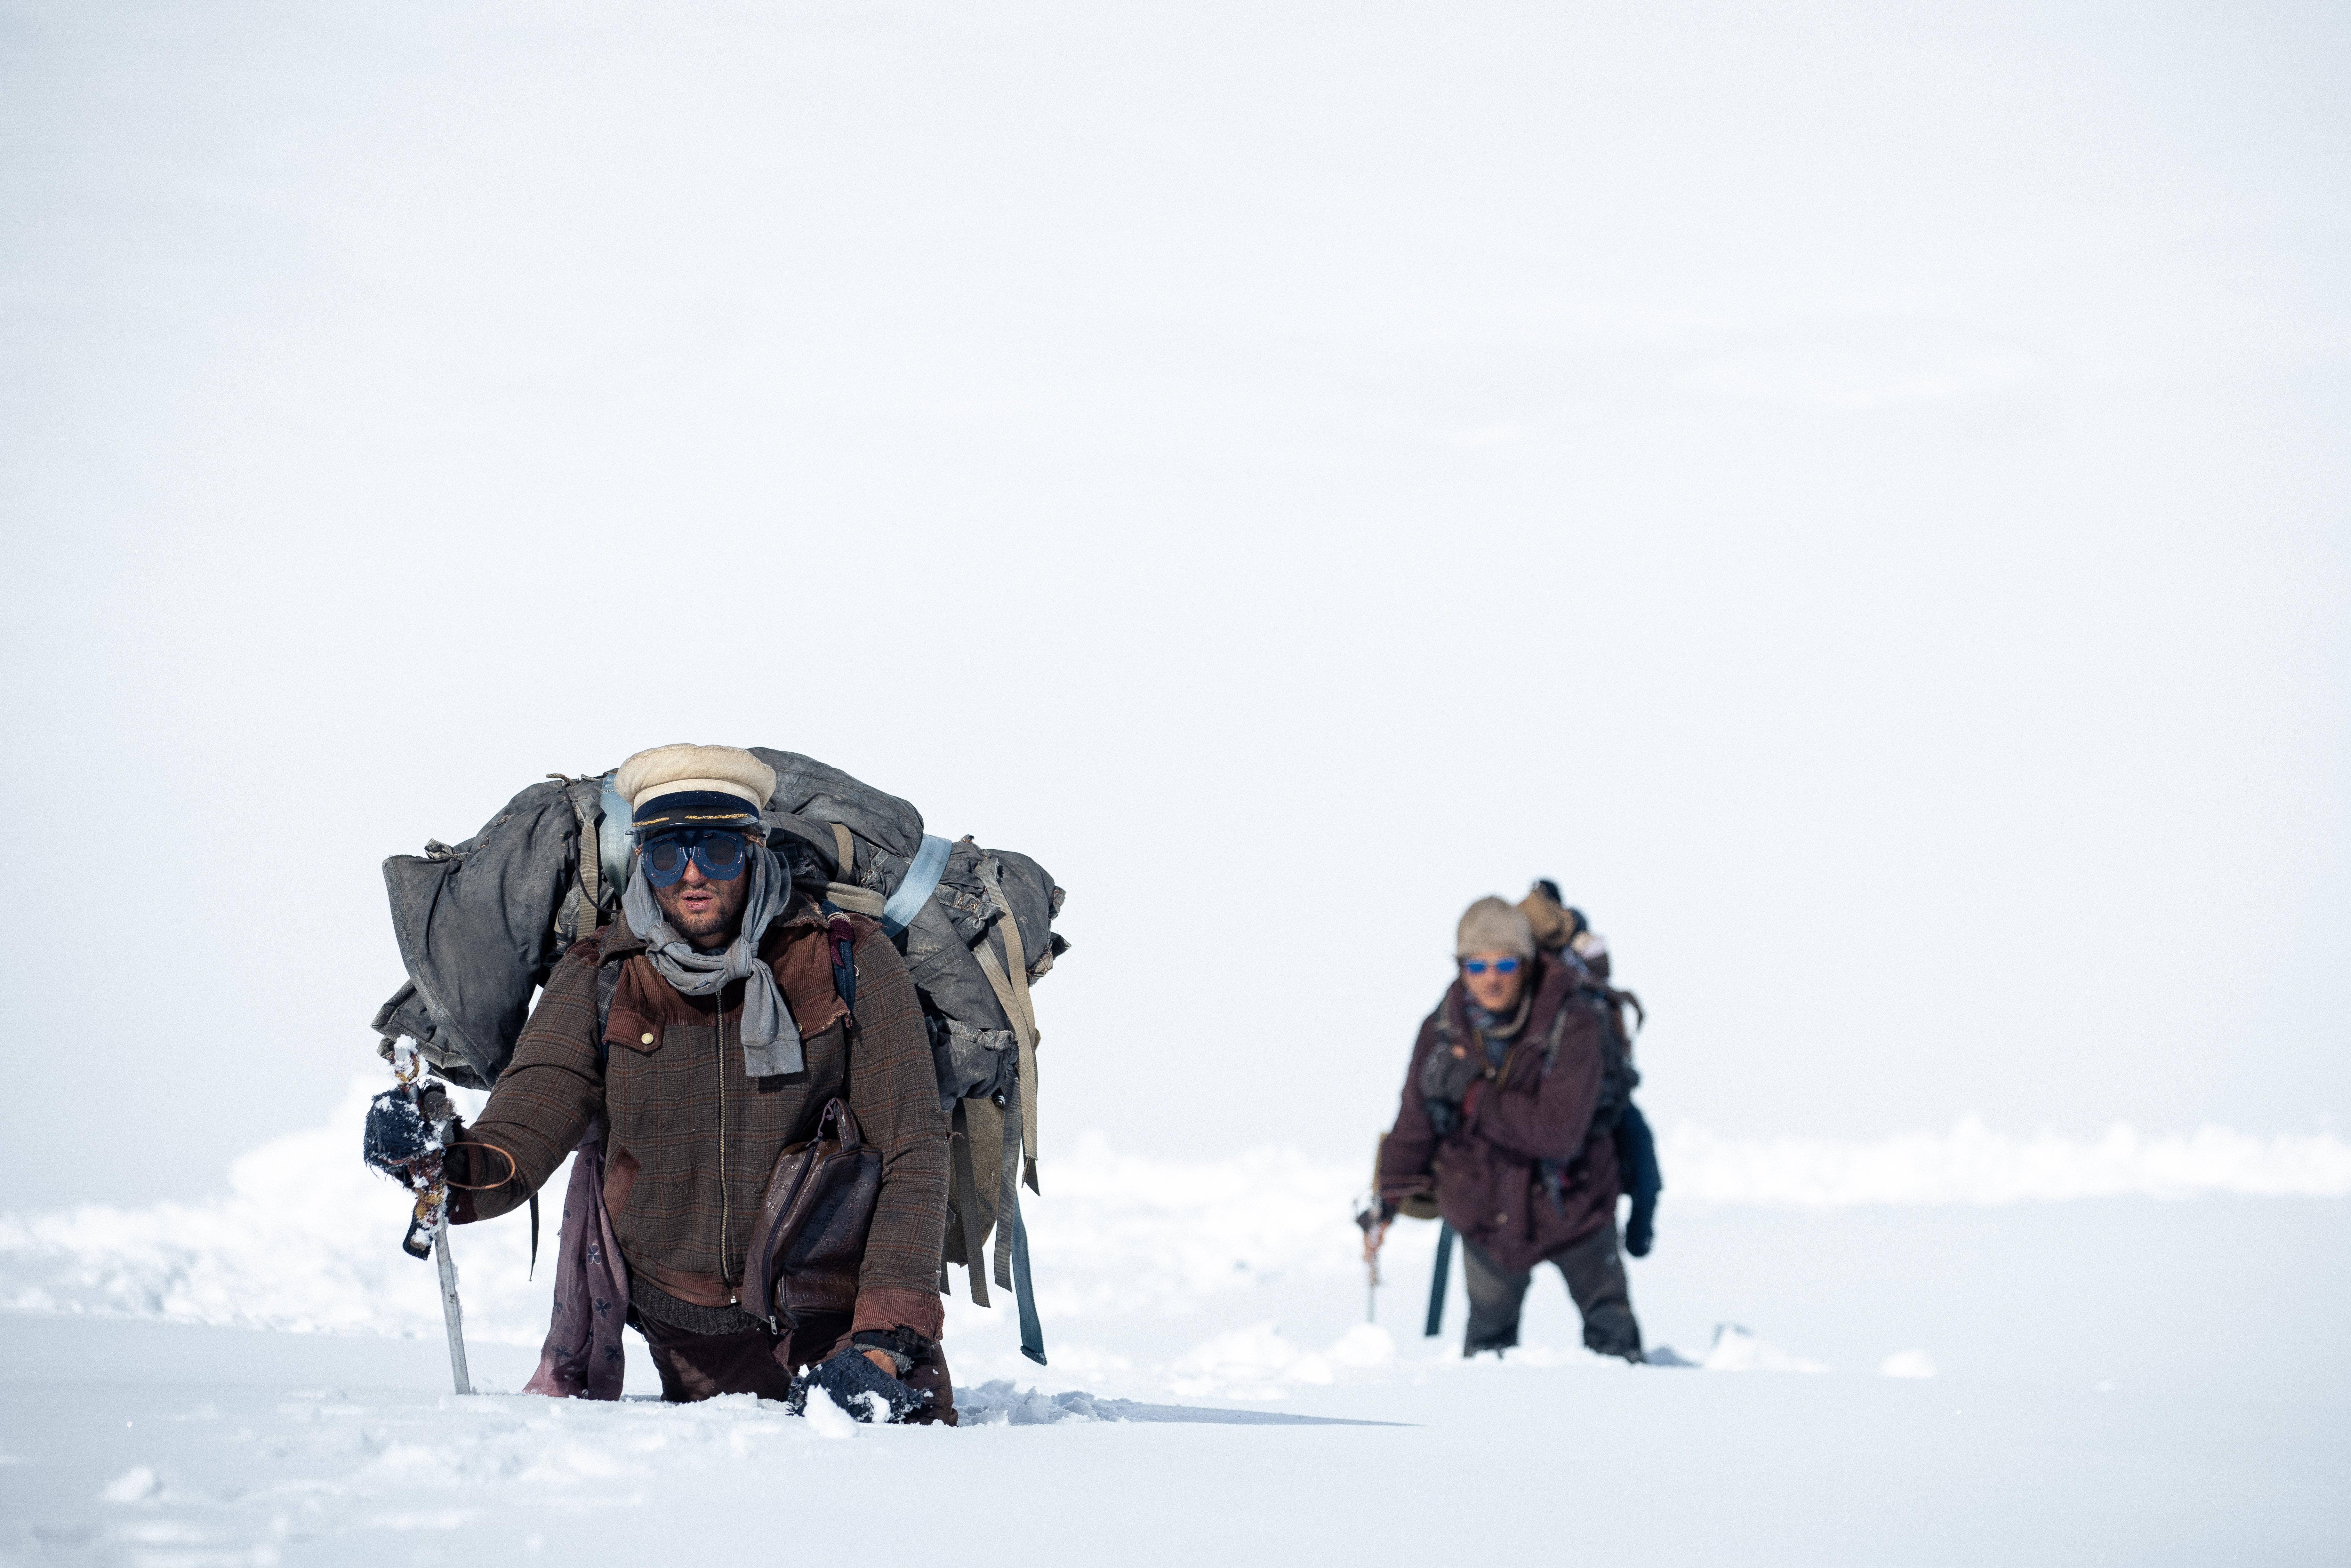 Deux hommes, en combinaison de grand froid, avec lunettes et paquetage sur le dos, tentent de progresser avec difficulté dans un amas de neige désertique ; scène du film Le cercle des neiges.